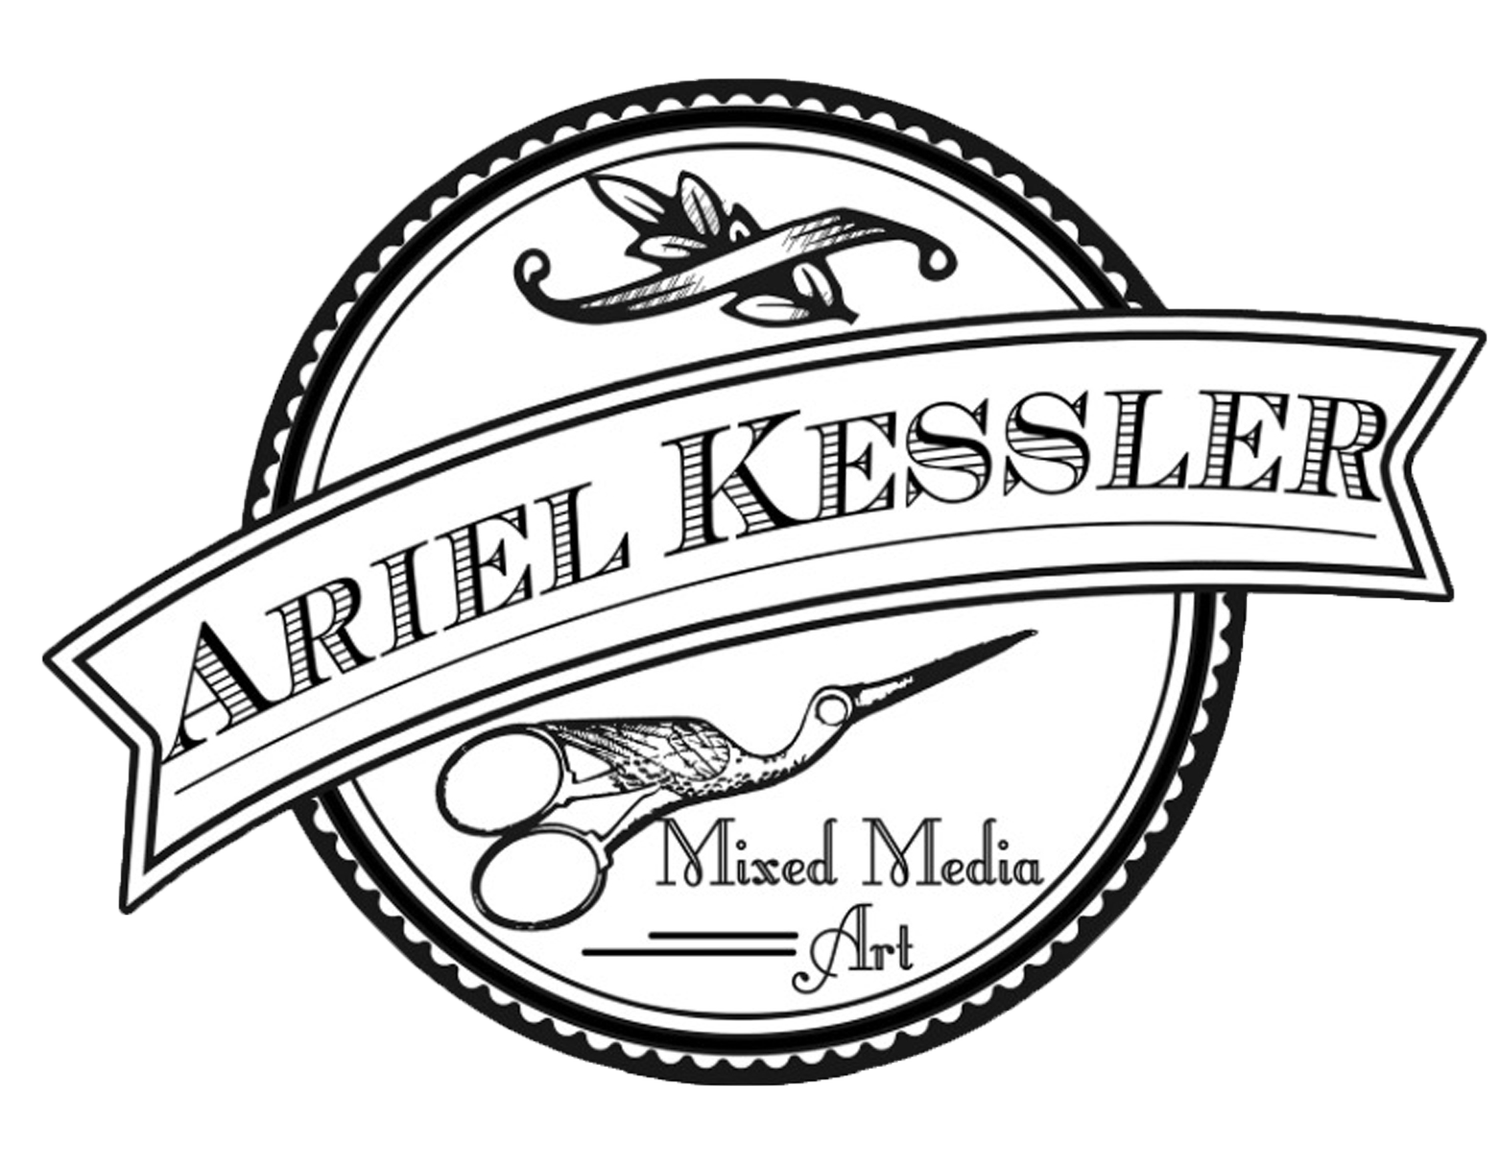 Ariel Kessler Art